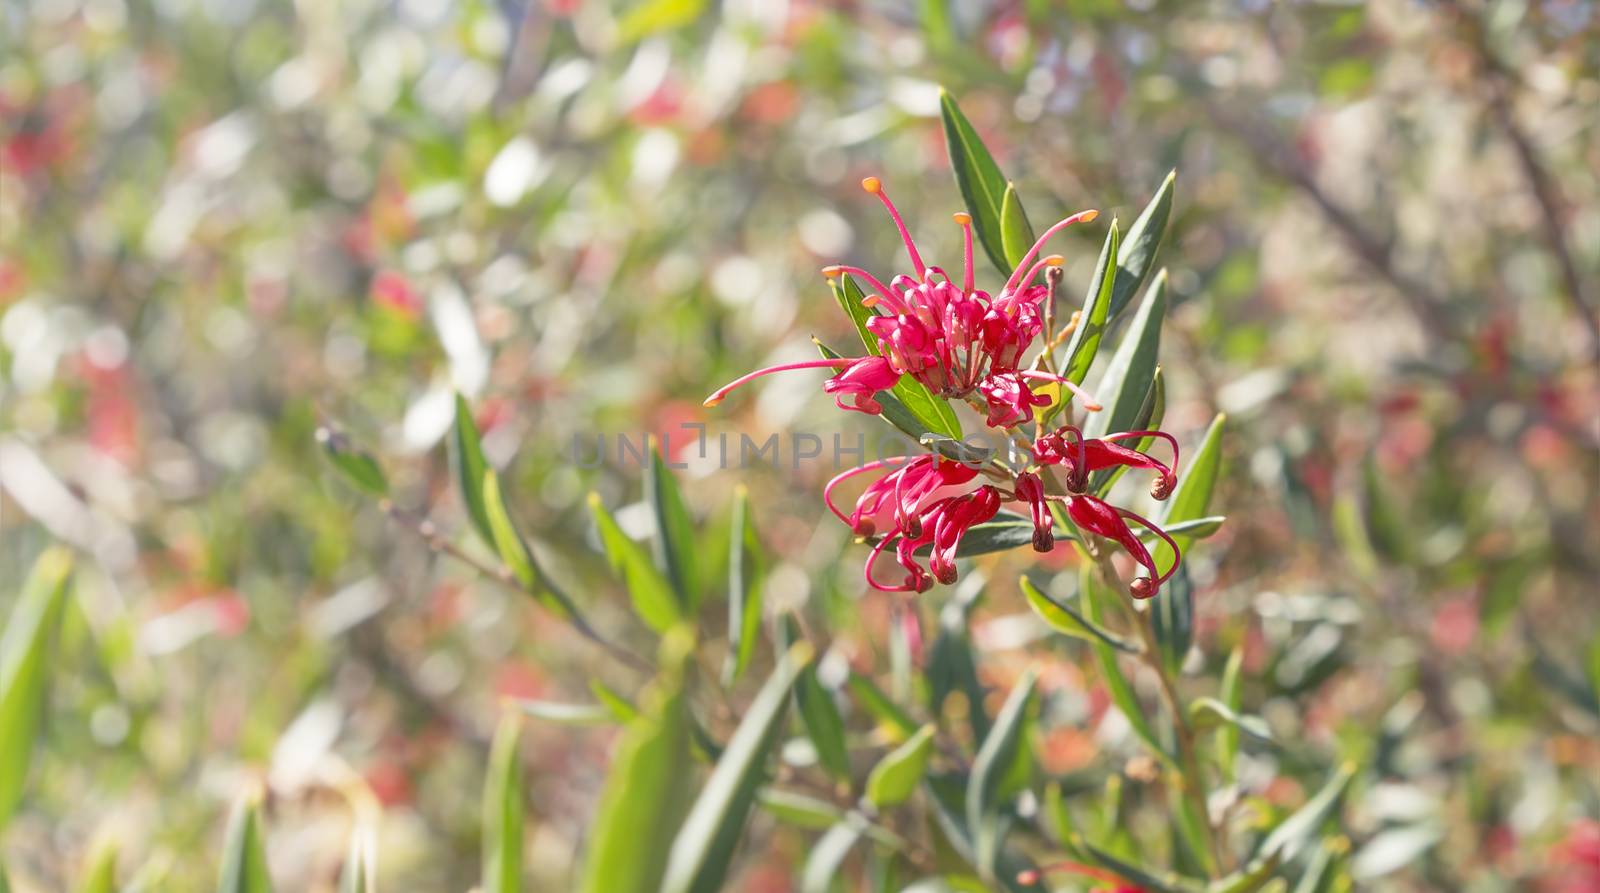 Australian wildflower Grevillea splendour by sherj